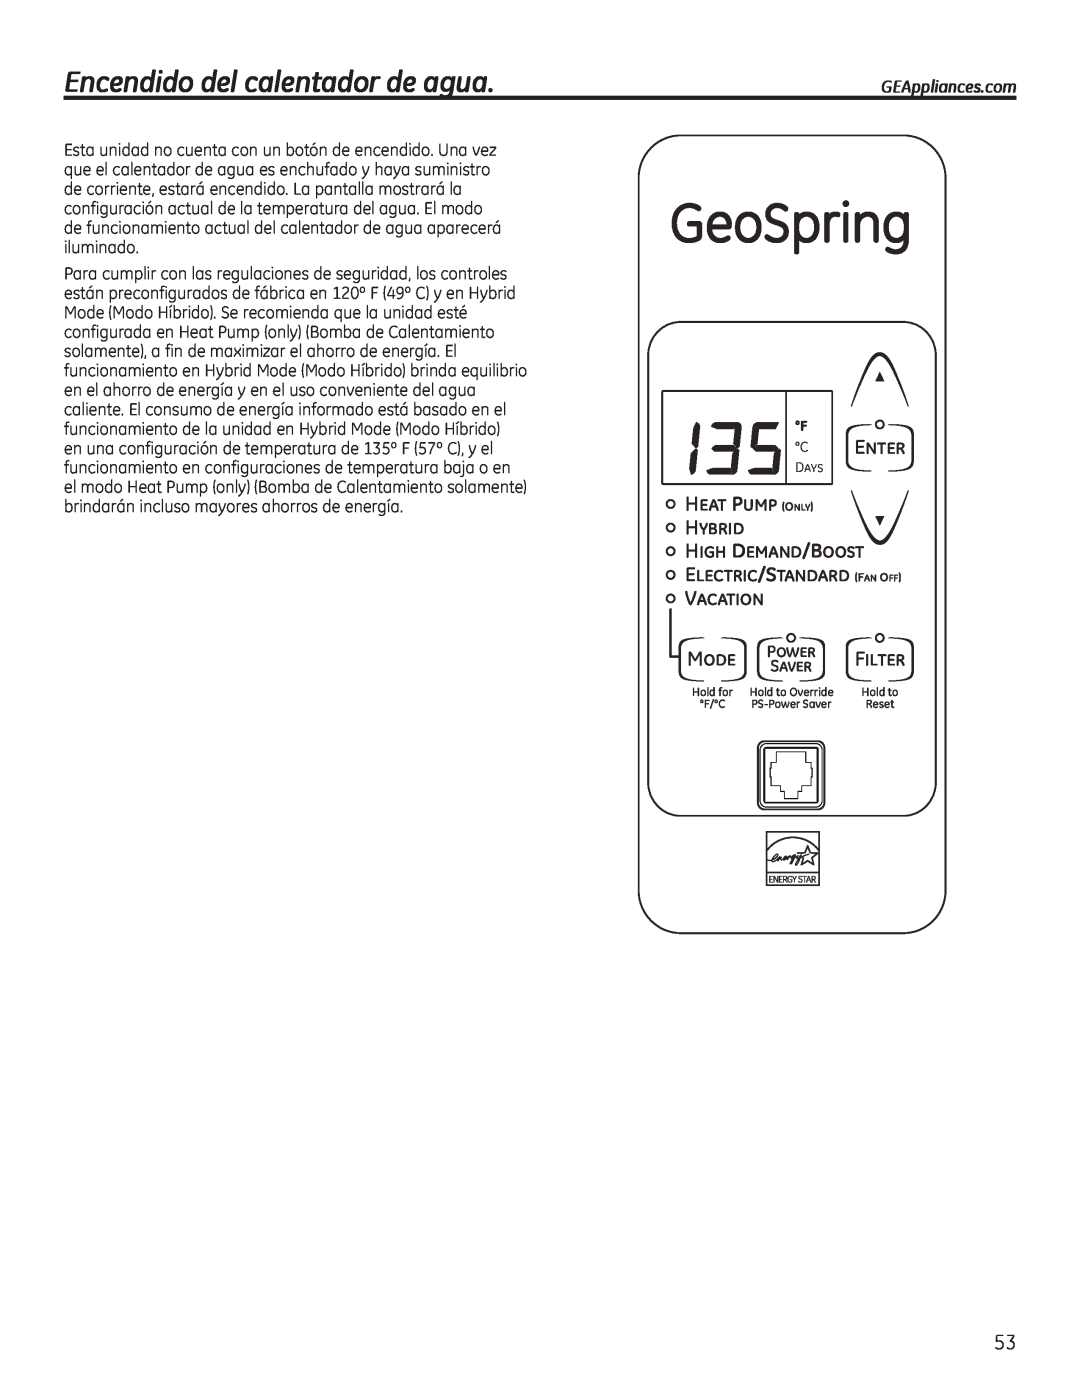 GE GEH50DEED Encendido del calentador de agua, GeoSpring, C Enter, Vacation, Mode, GEAppliances.com, Power, Filter, Saver 